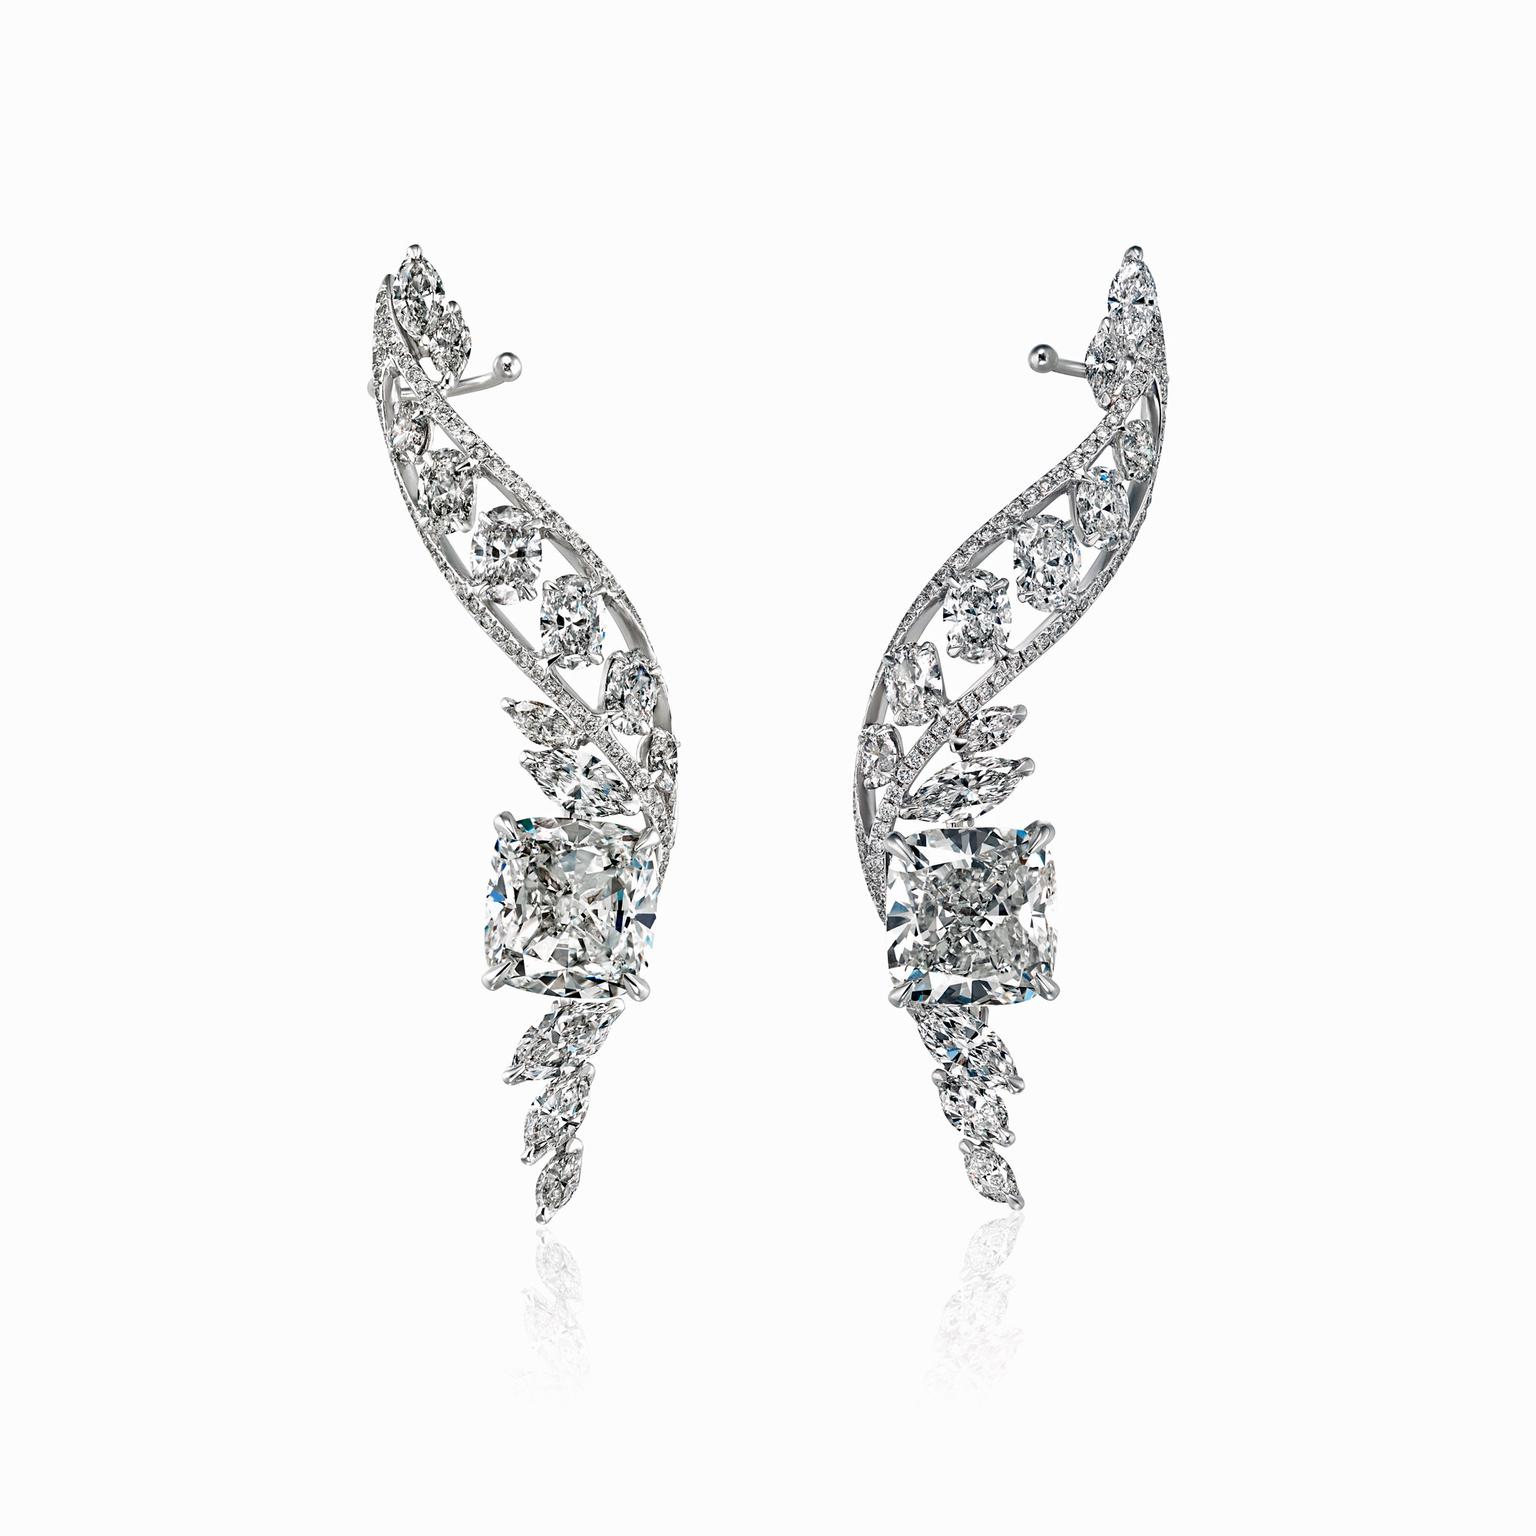 Boghossian bridal earrings